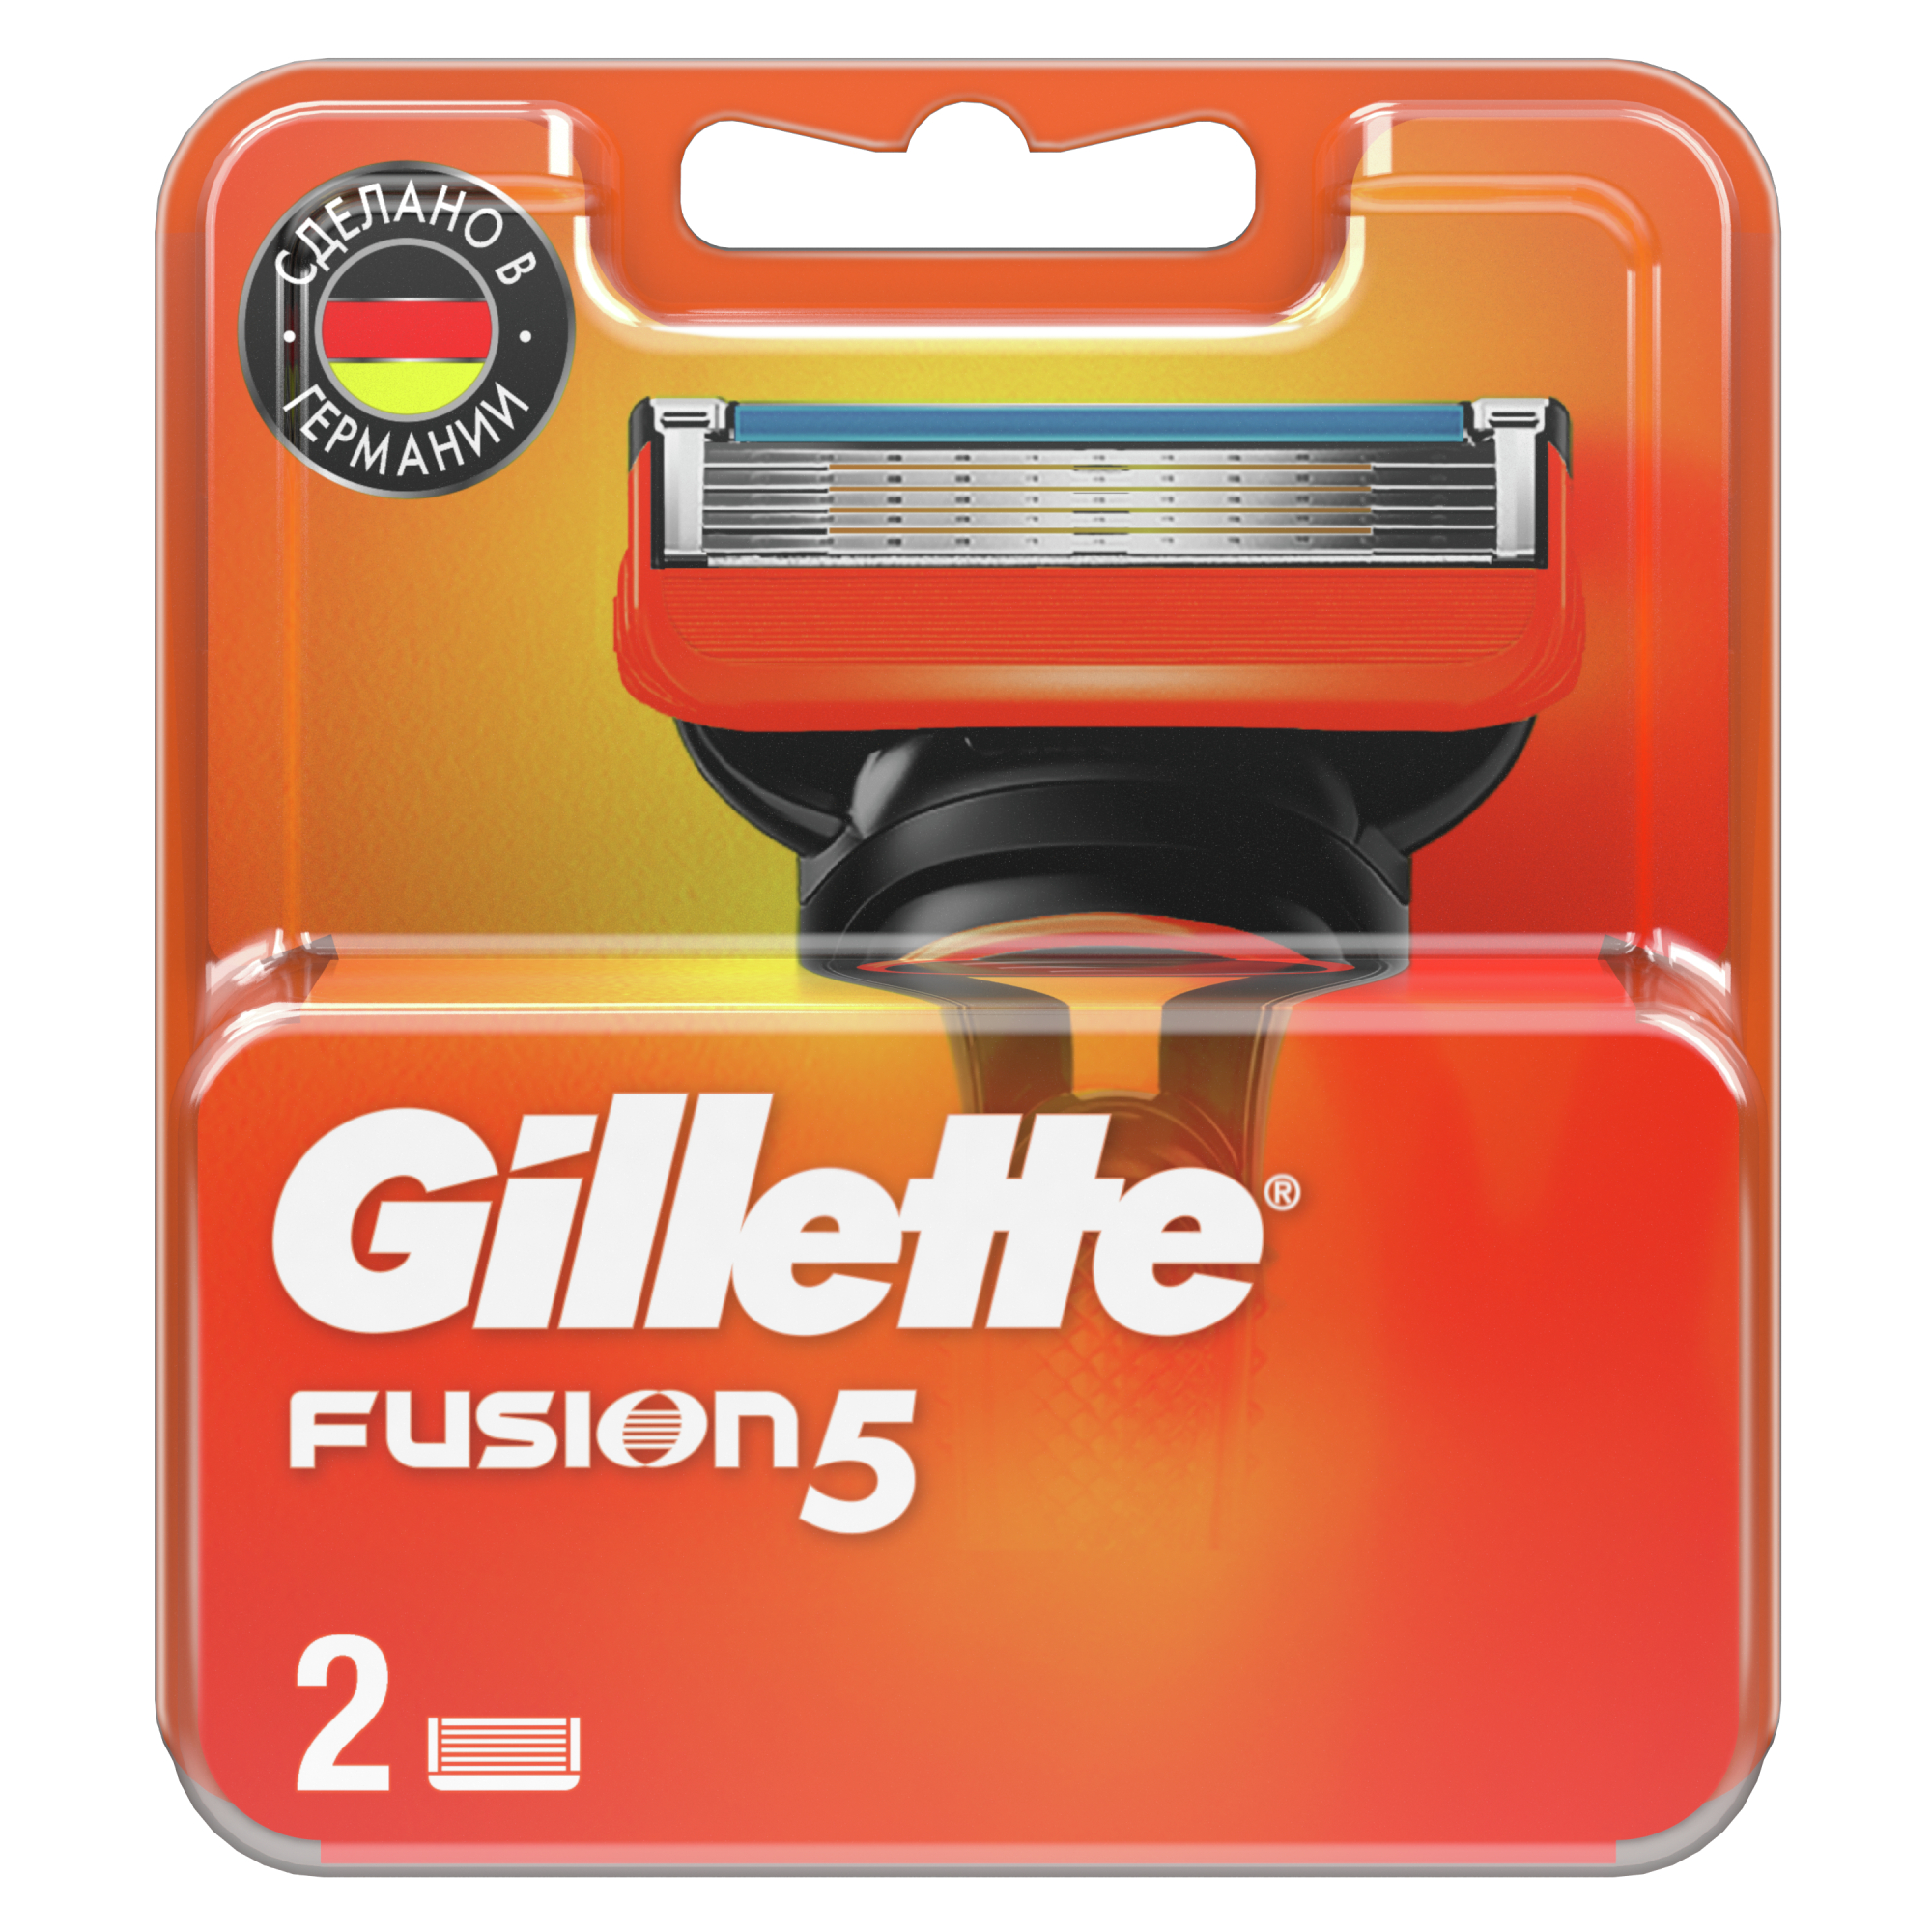 Сменные кассеты Gillette Fusion5 для мужской бритвы, 2 шт, с 5 лезвиями, c точным триммером для труднодоступных мест станок для бритья gillette fusion power red 1 кассета